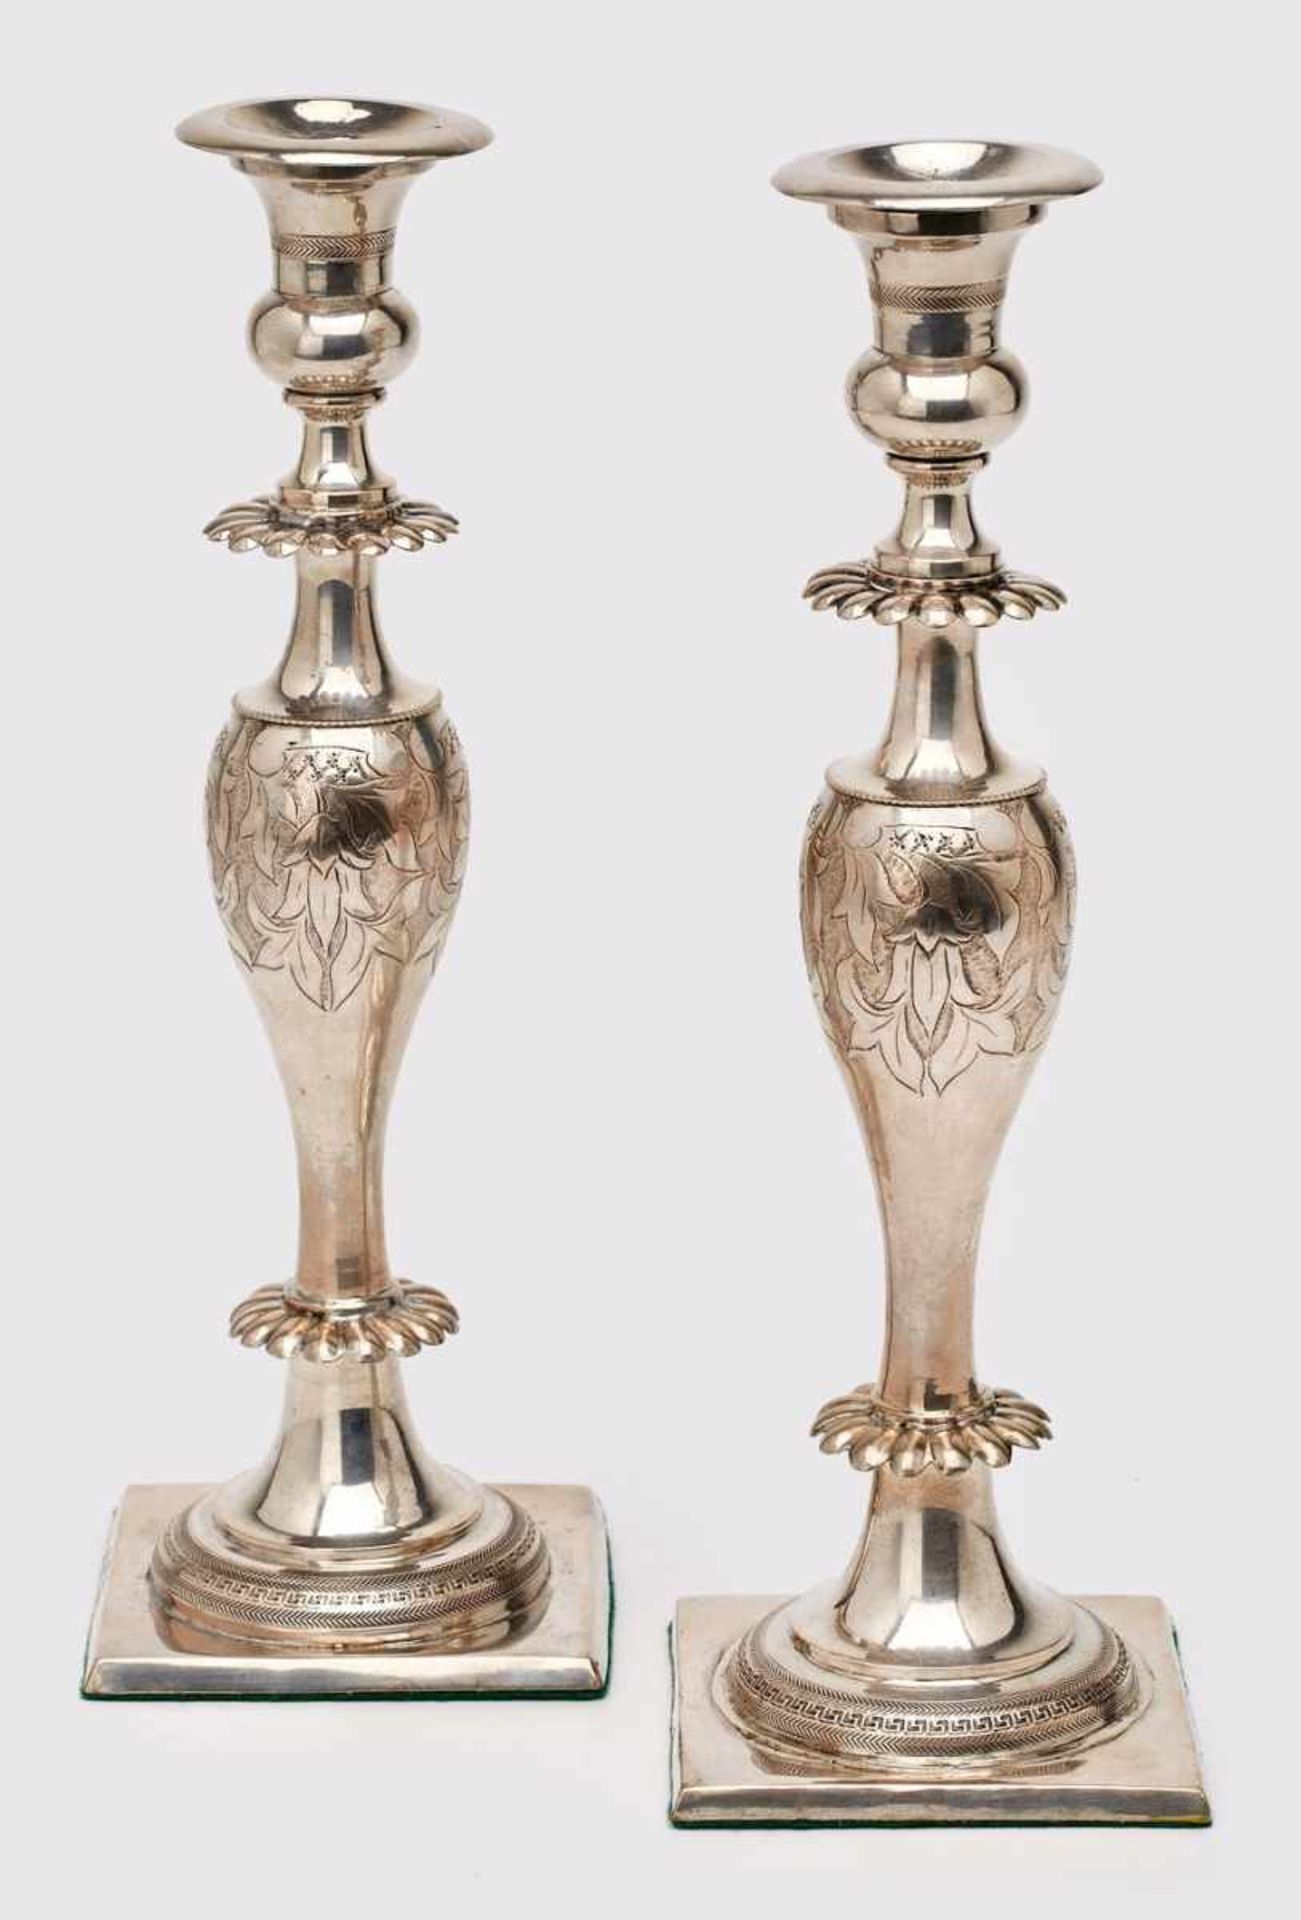 Paar Leuchter, Breslau 1845. Silber. Beschau Breslau m. "45", Jahreszeichen "S" (f. 1839-49),